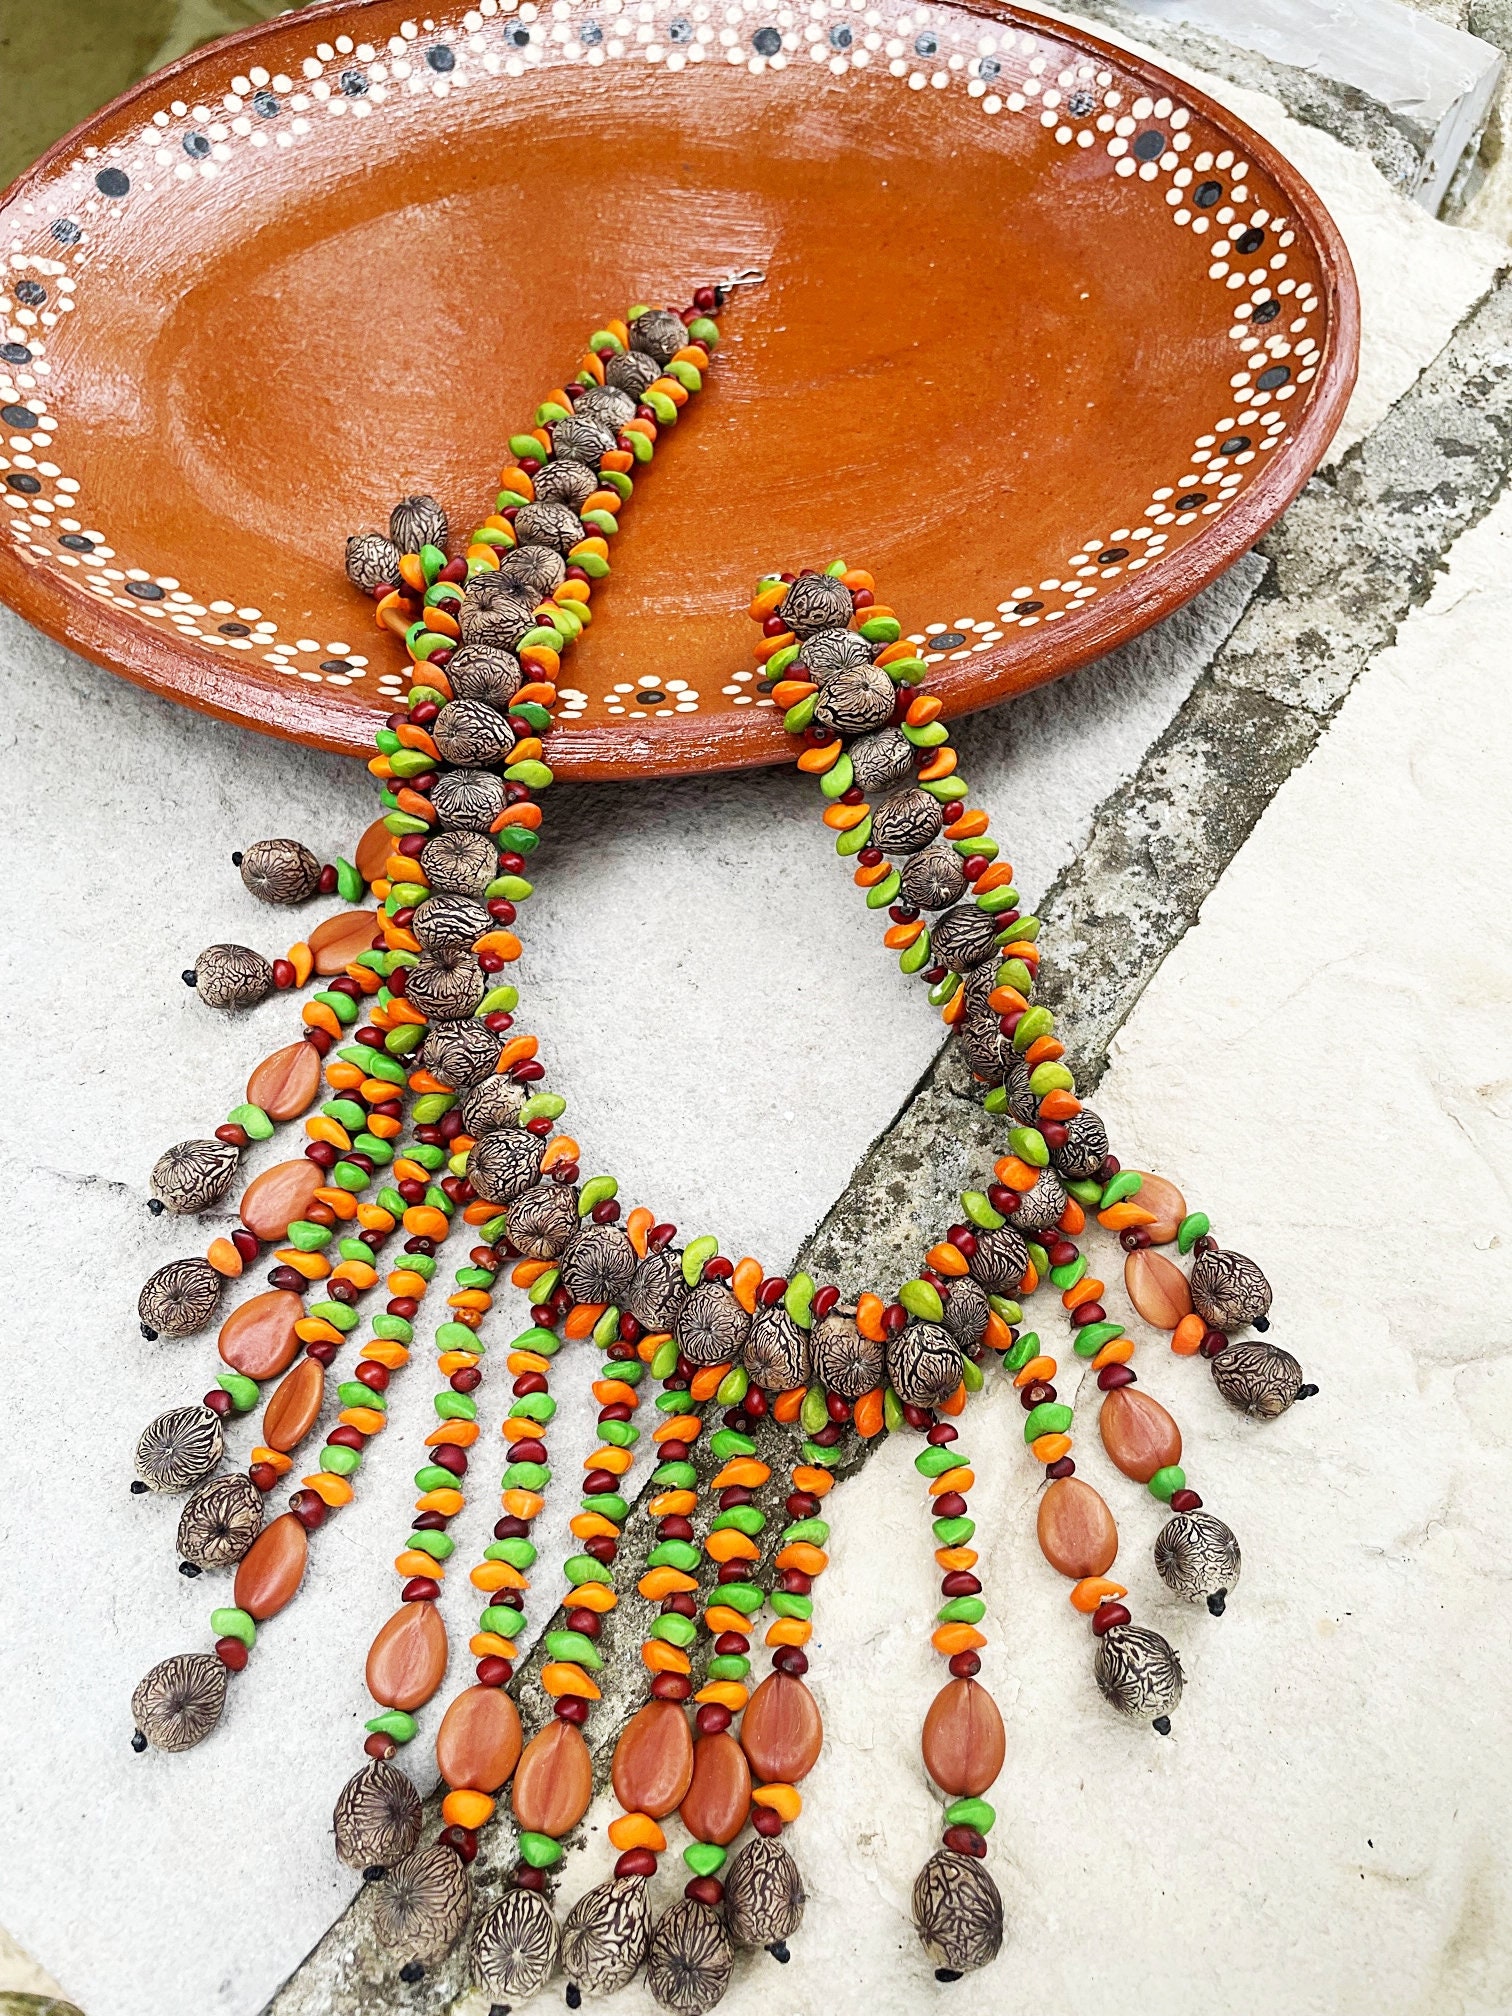 Boho Beaded Adjustable Necklace Kit –